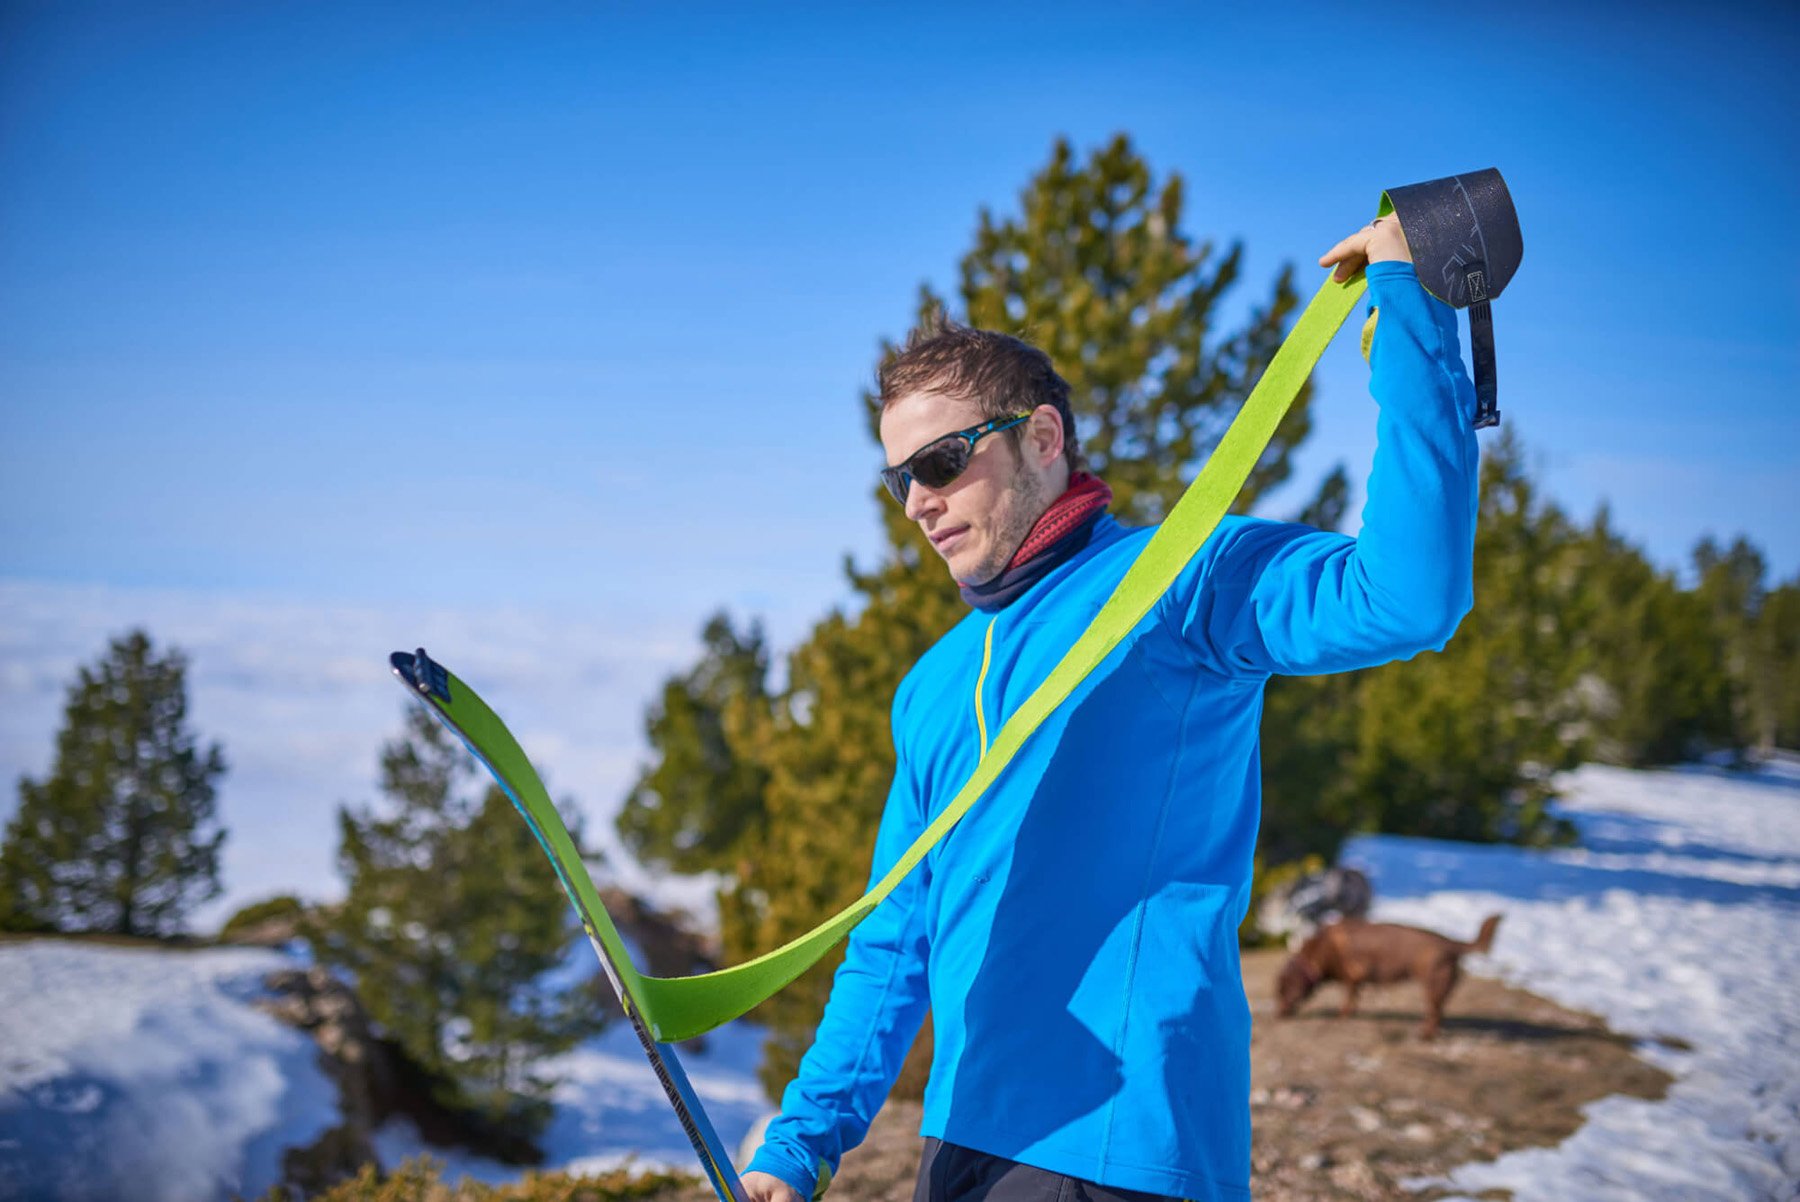 Mann beim Anbringen der Skitourenfelle auf den Skiern